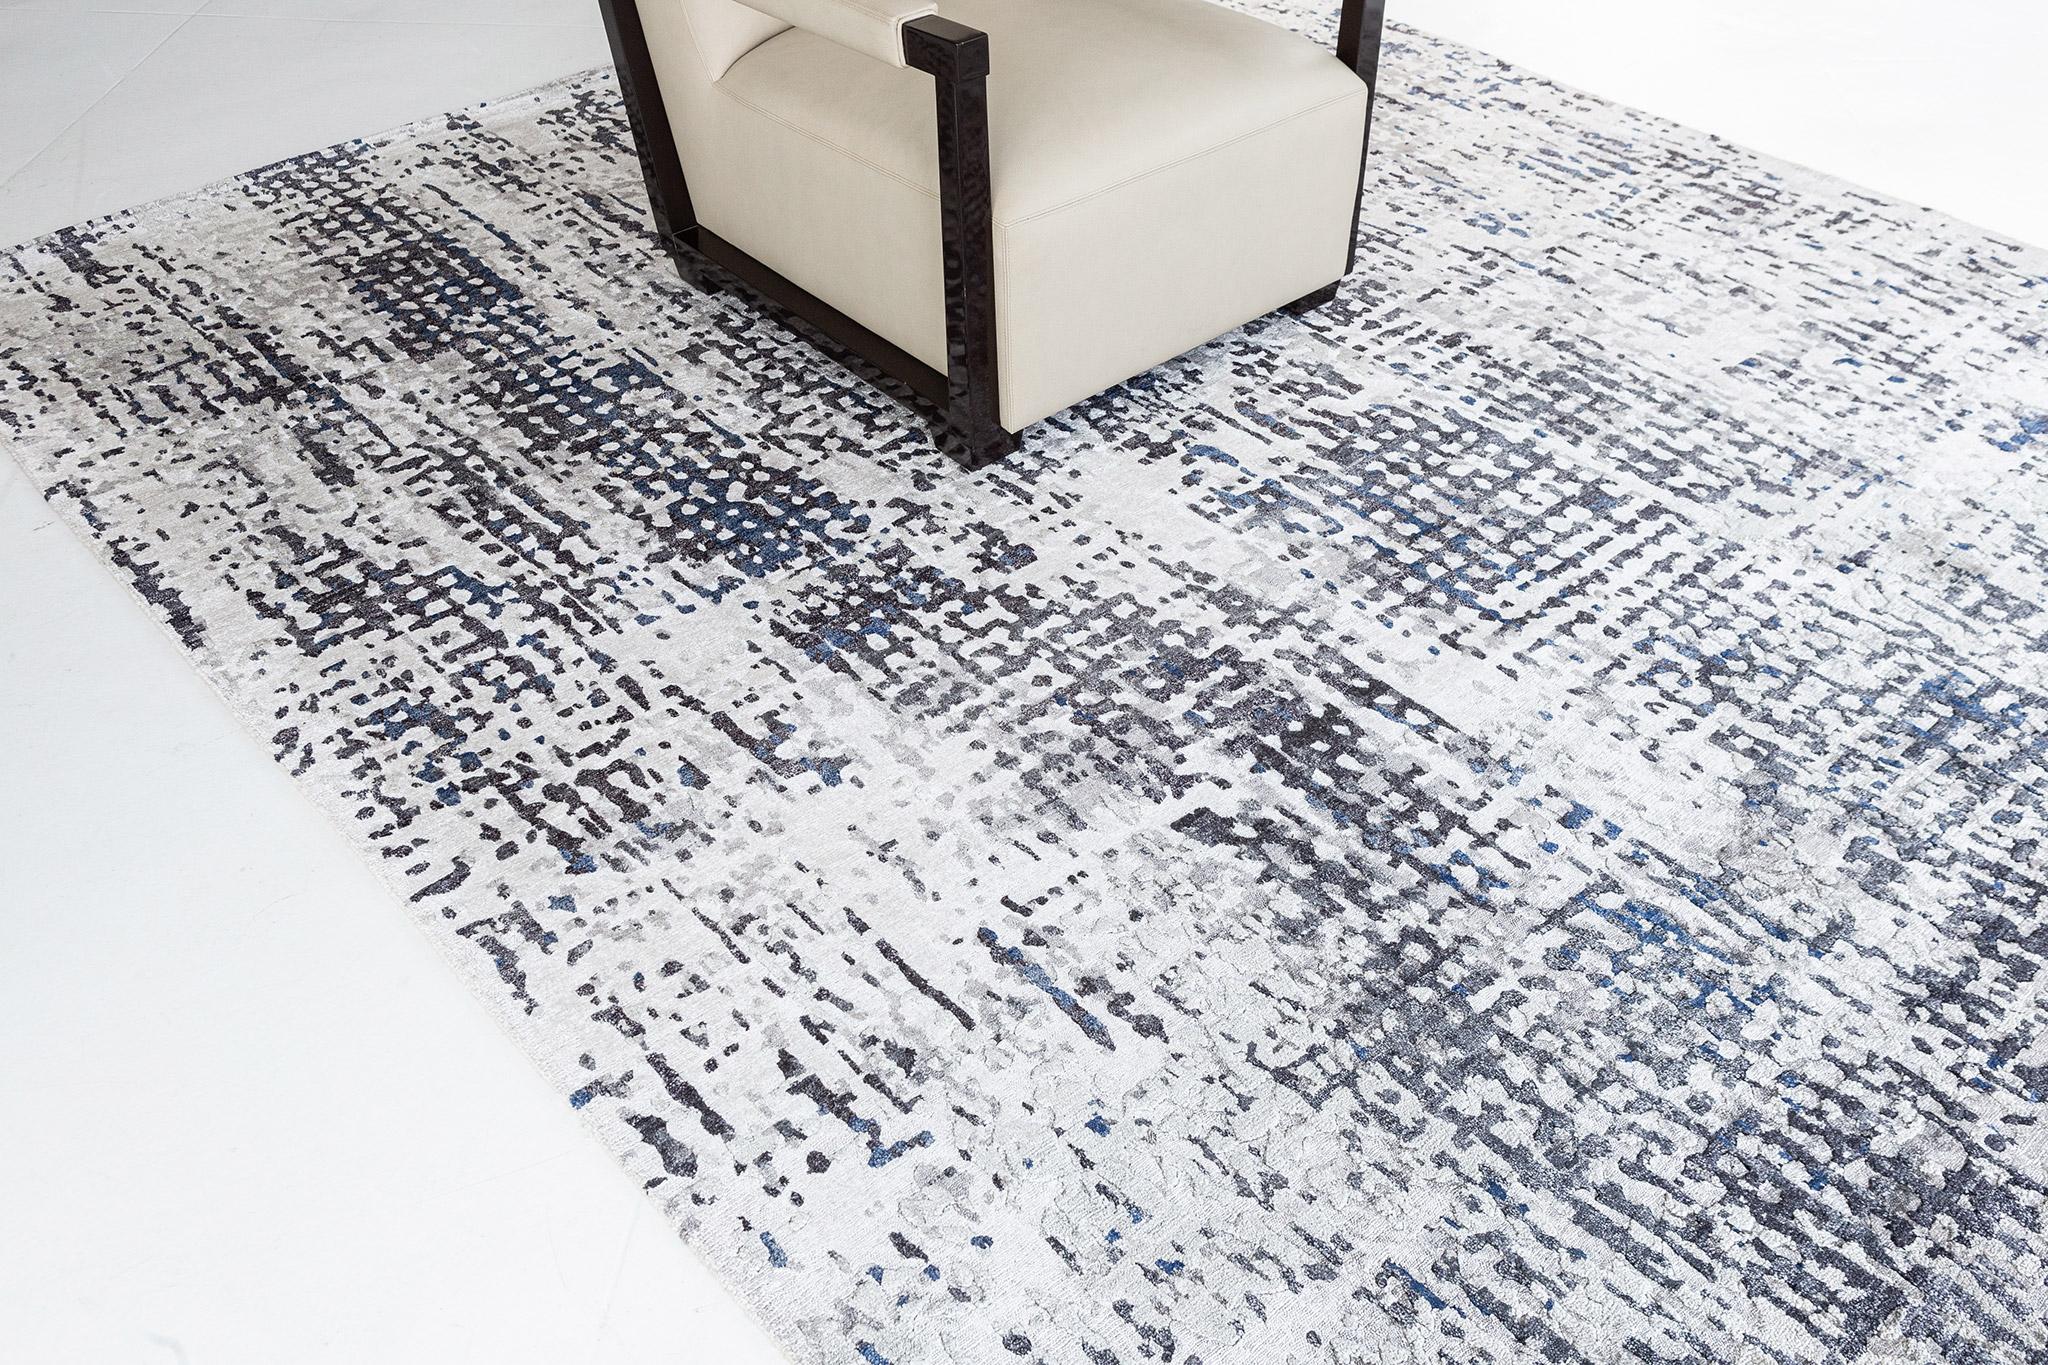 Ce tapis magique en soie de bambou au Design Modern/One présente des traits horizontaux et verticaux, avec sa combinaison ludique de couleurs dominantes anthracite et grise. Il est tout aussi tendance et raffiné à la fois, parfait pour tout